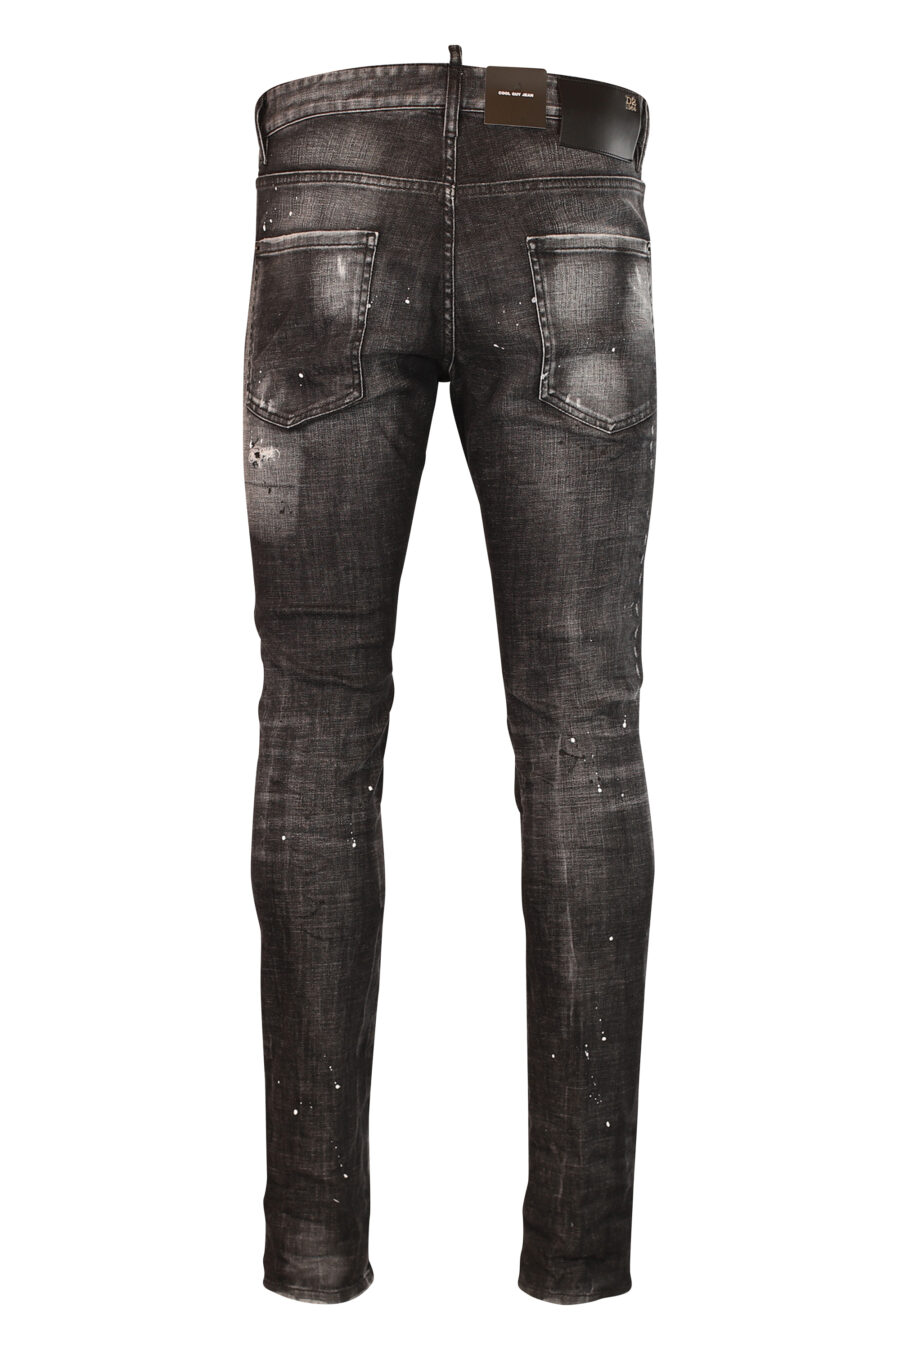 Pantalon en jean noir semi-usé et déchiré - 8052134953105 3